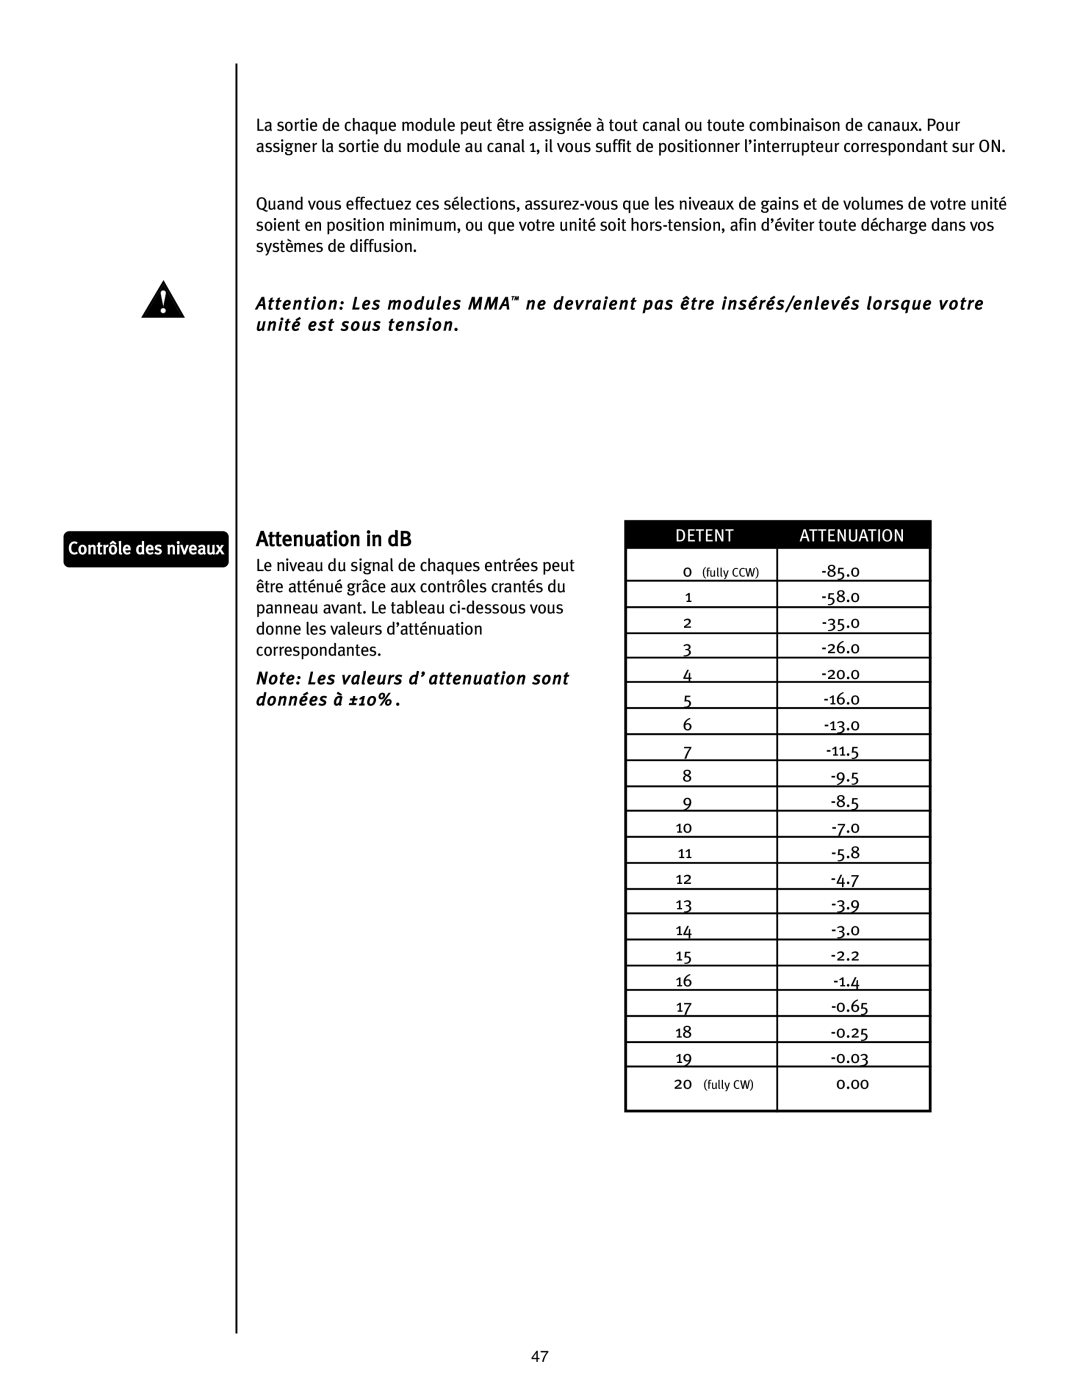 Peavey ICS 4200 user manual Contrôle des niveaux, Detent, Attenuation, 85.0 